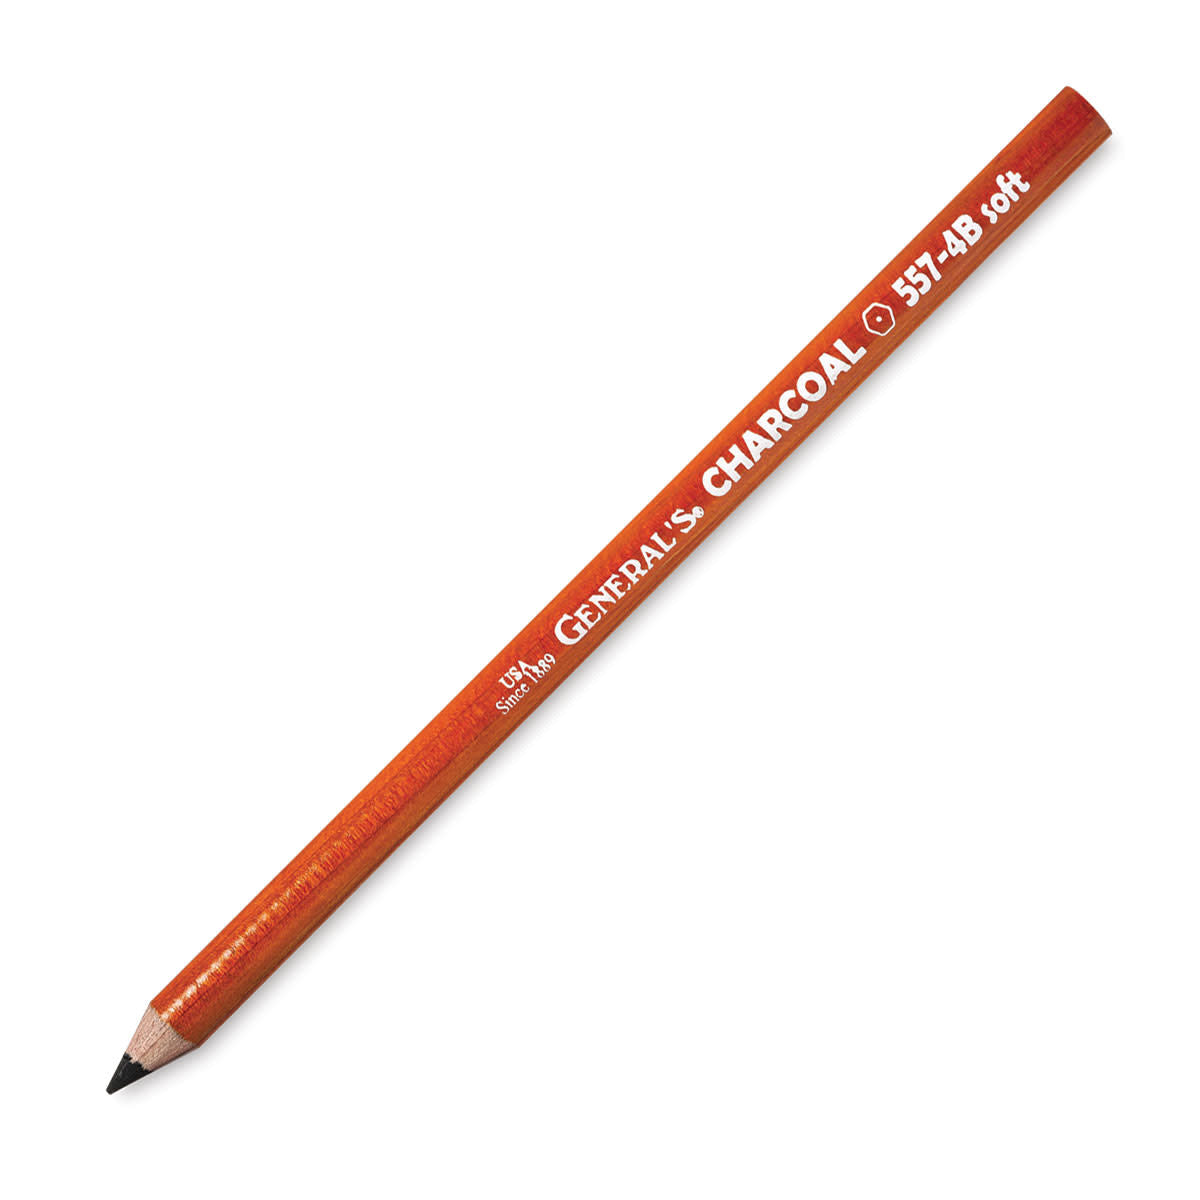 General’s Charcoal Pencils